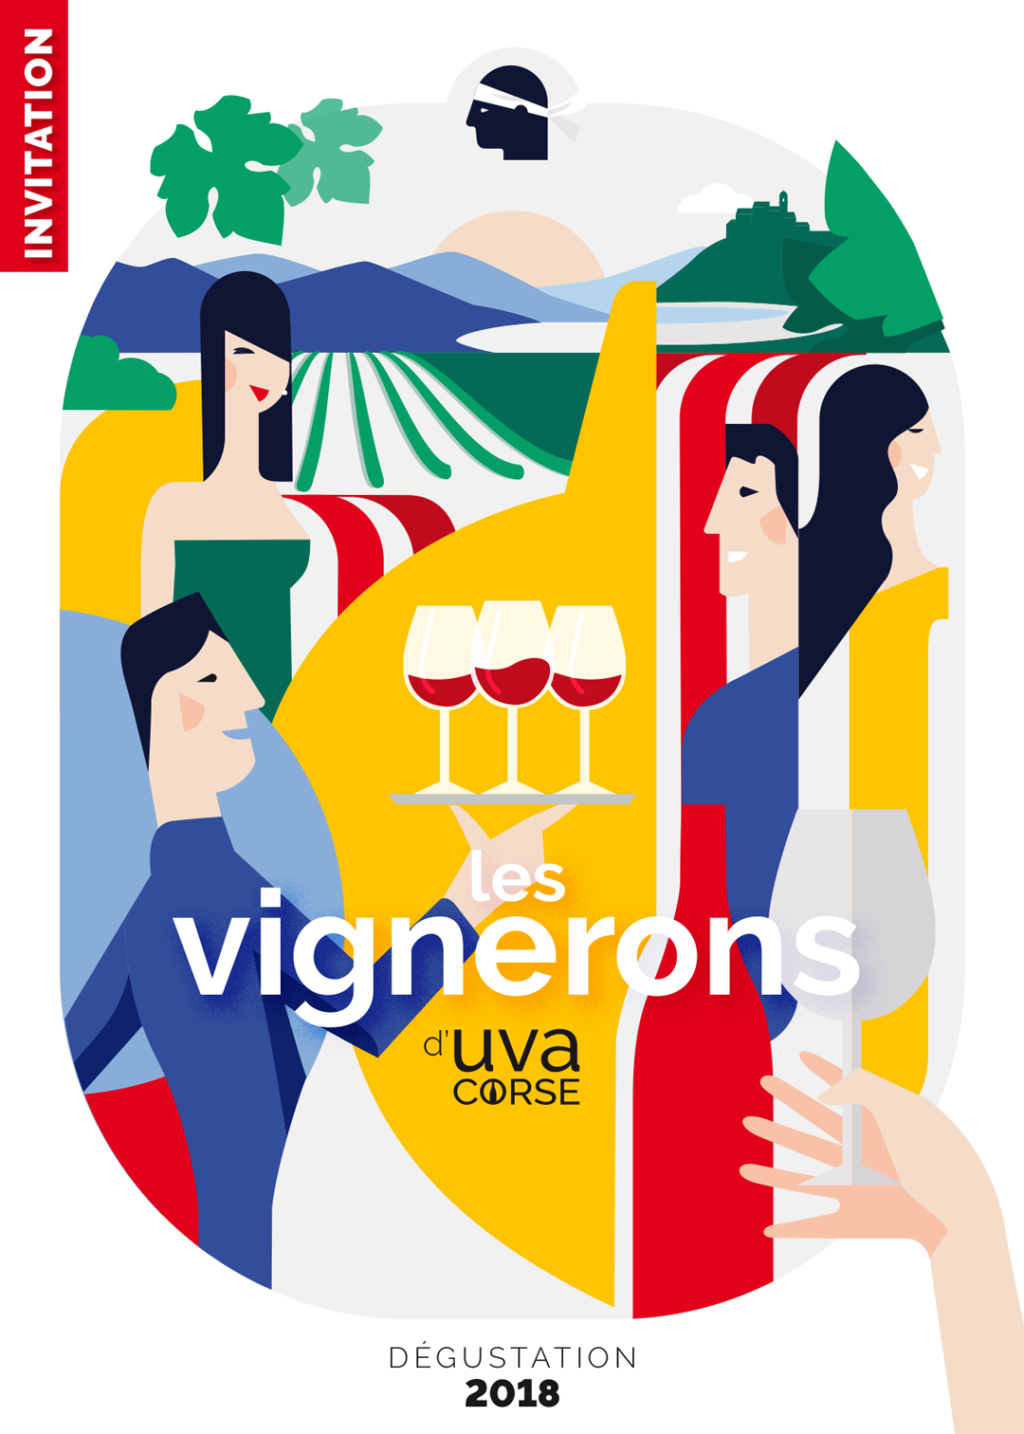 uva corse couverture depliant 2018 - Uva Corse